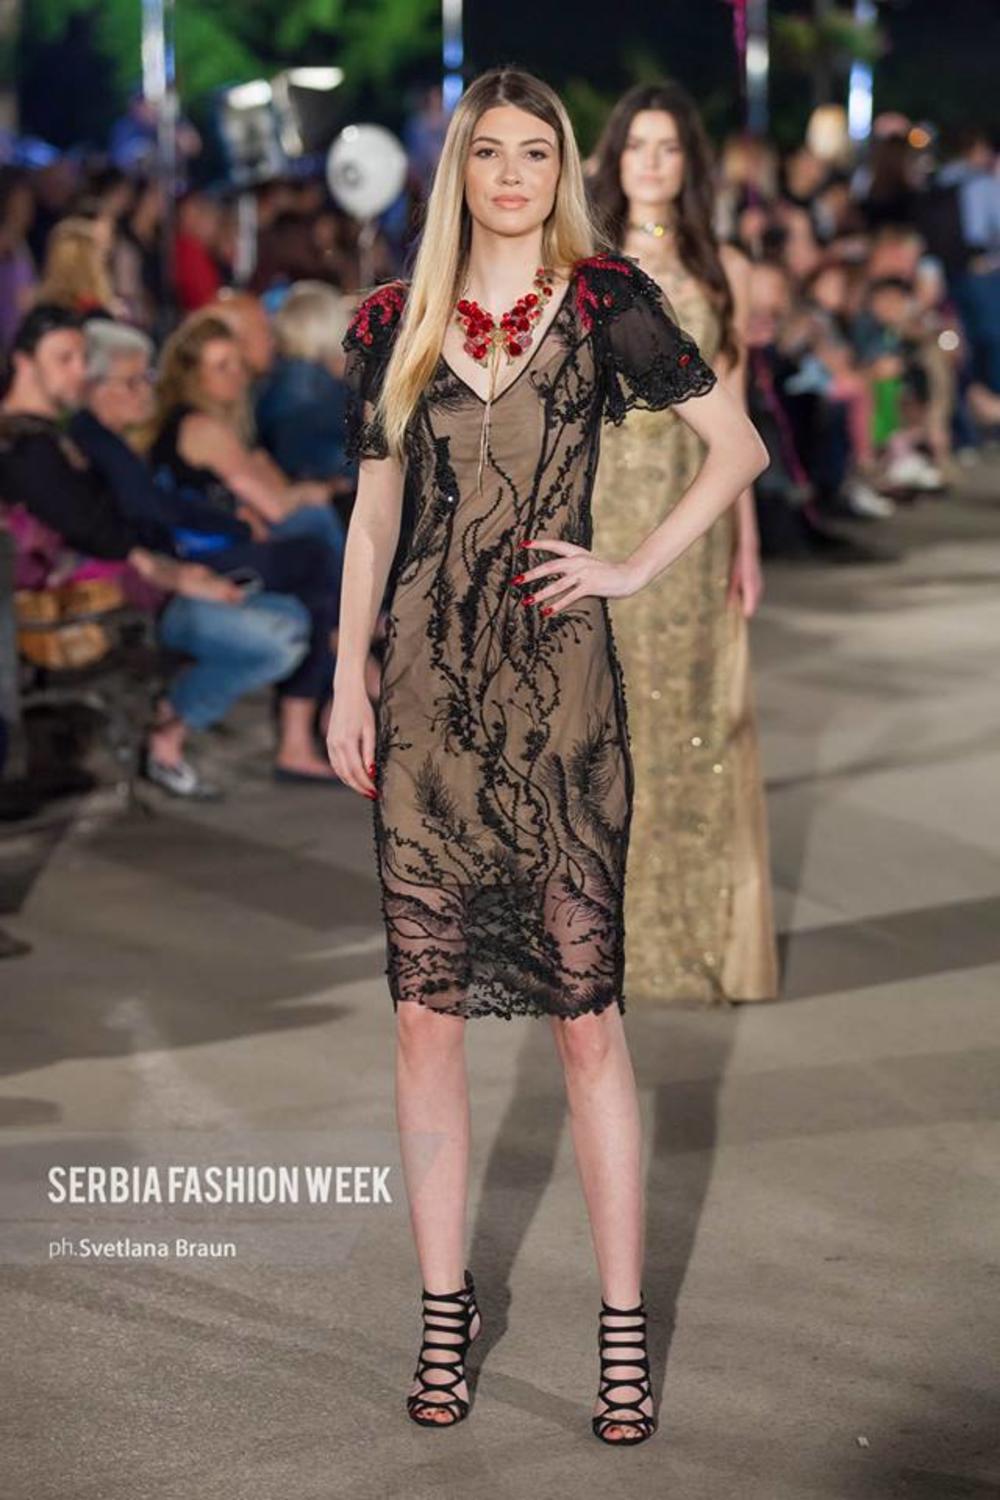 Serbia Fashion Week  